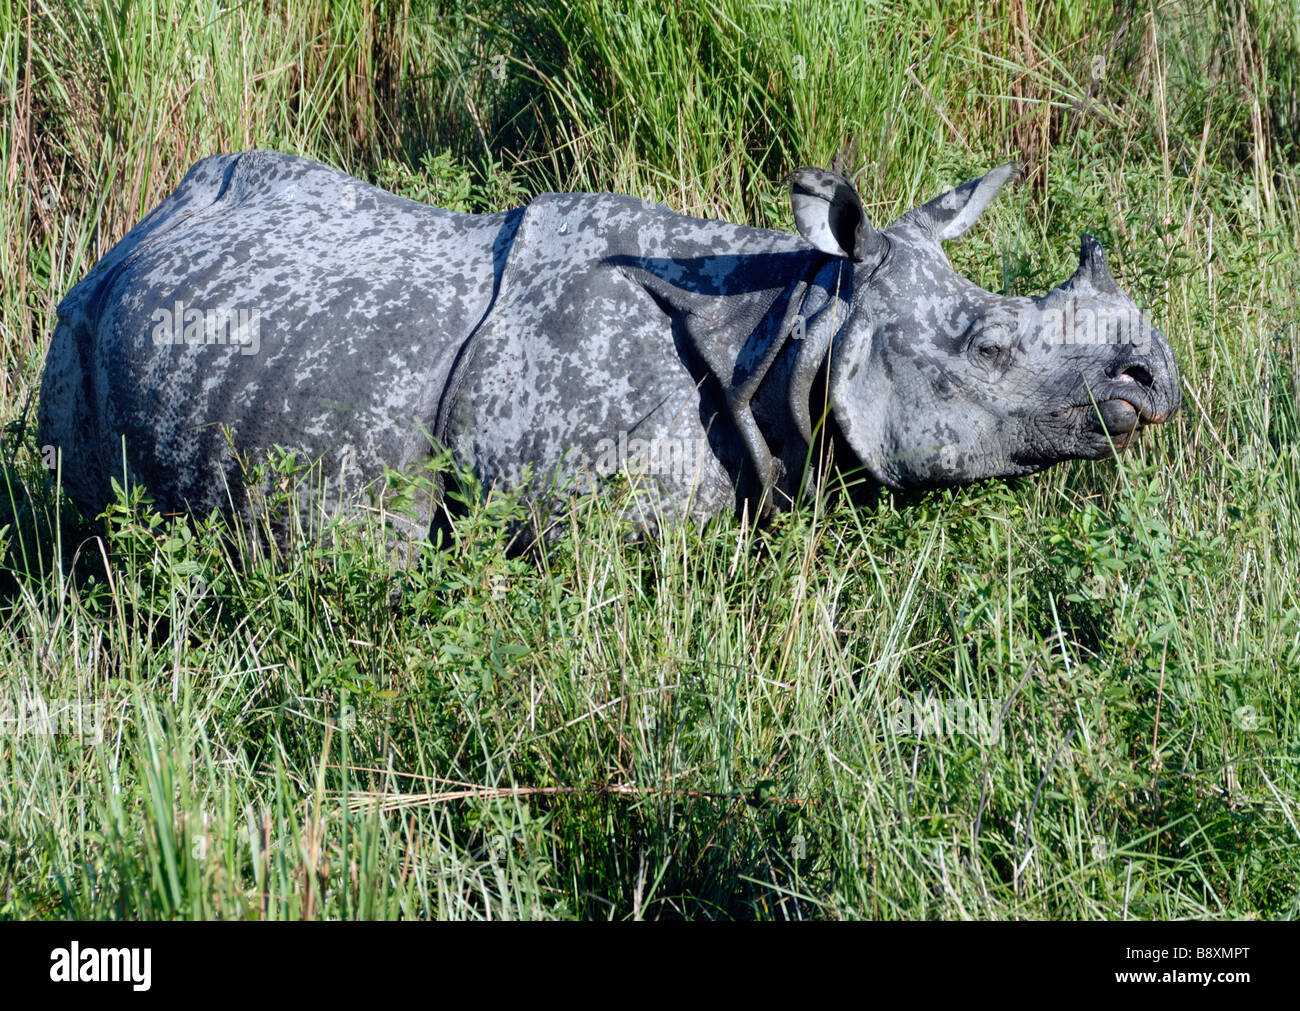 Rhinocéros à une corne, indien (Rhinoceros unicornis) Banque D'Images